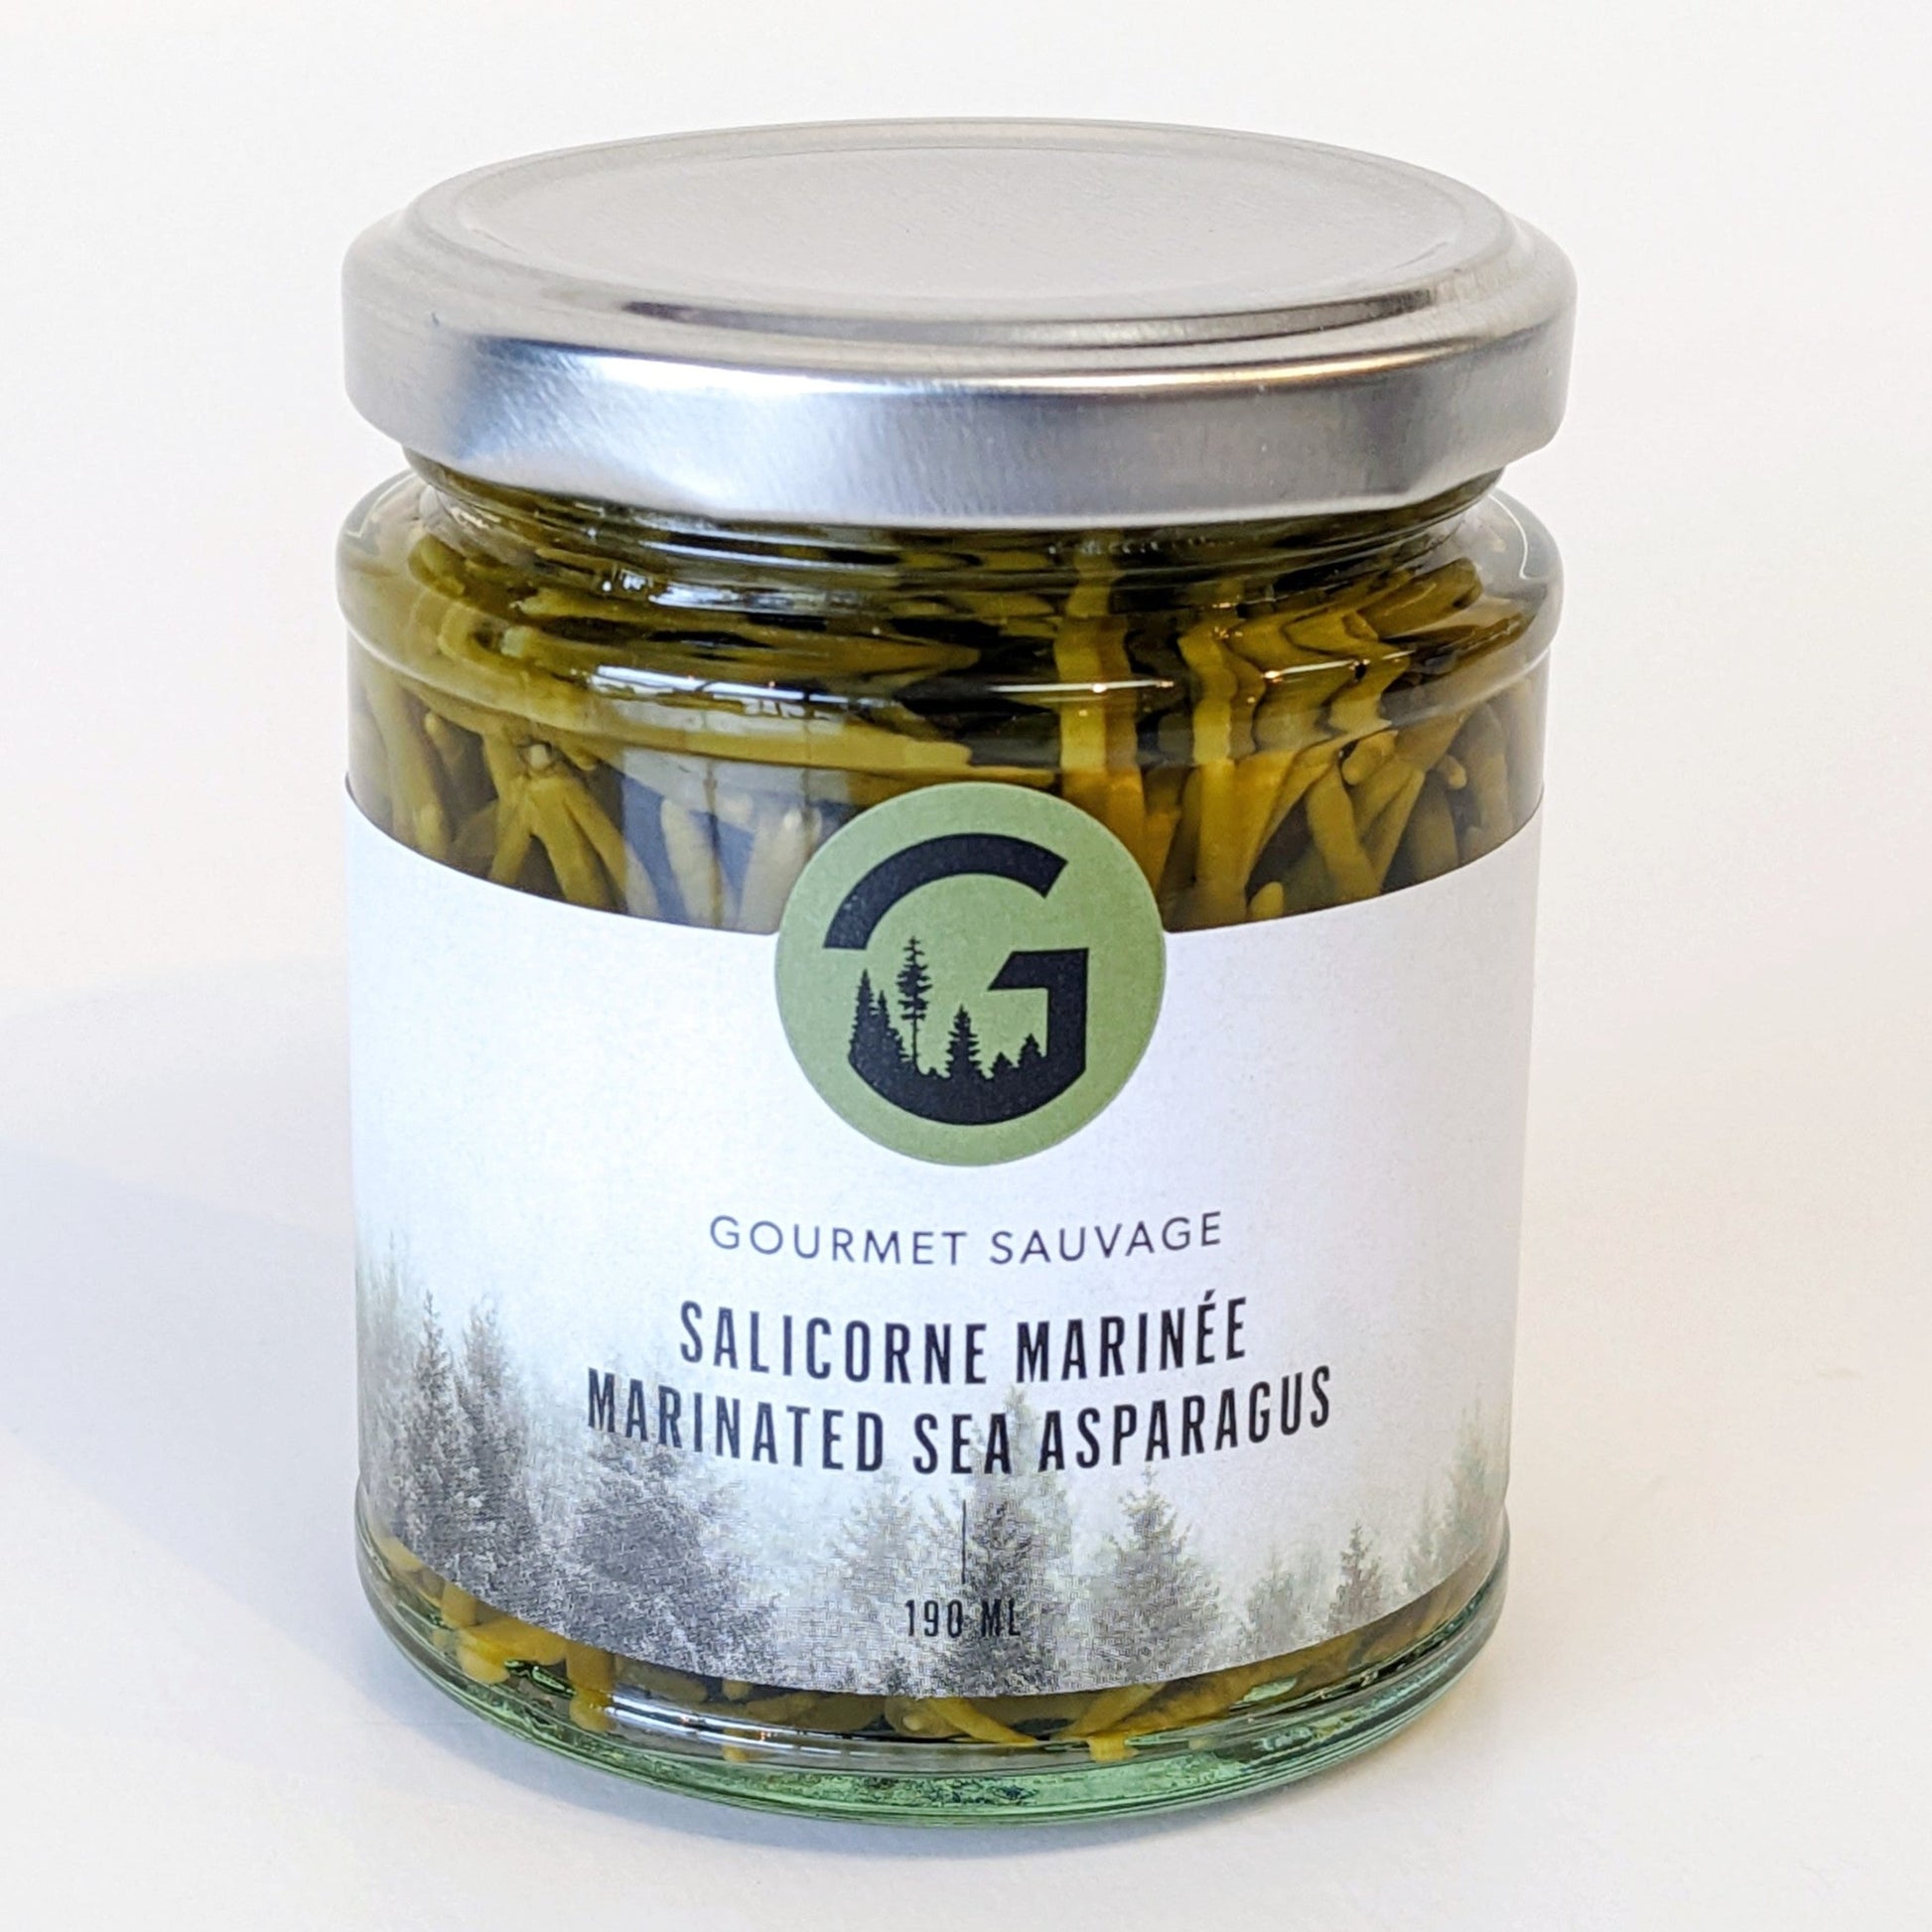 Salicorne marinée - Gourmet Sauvage